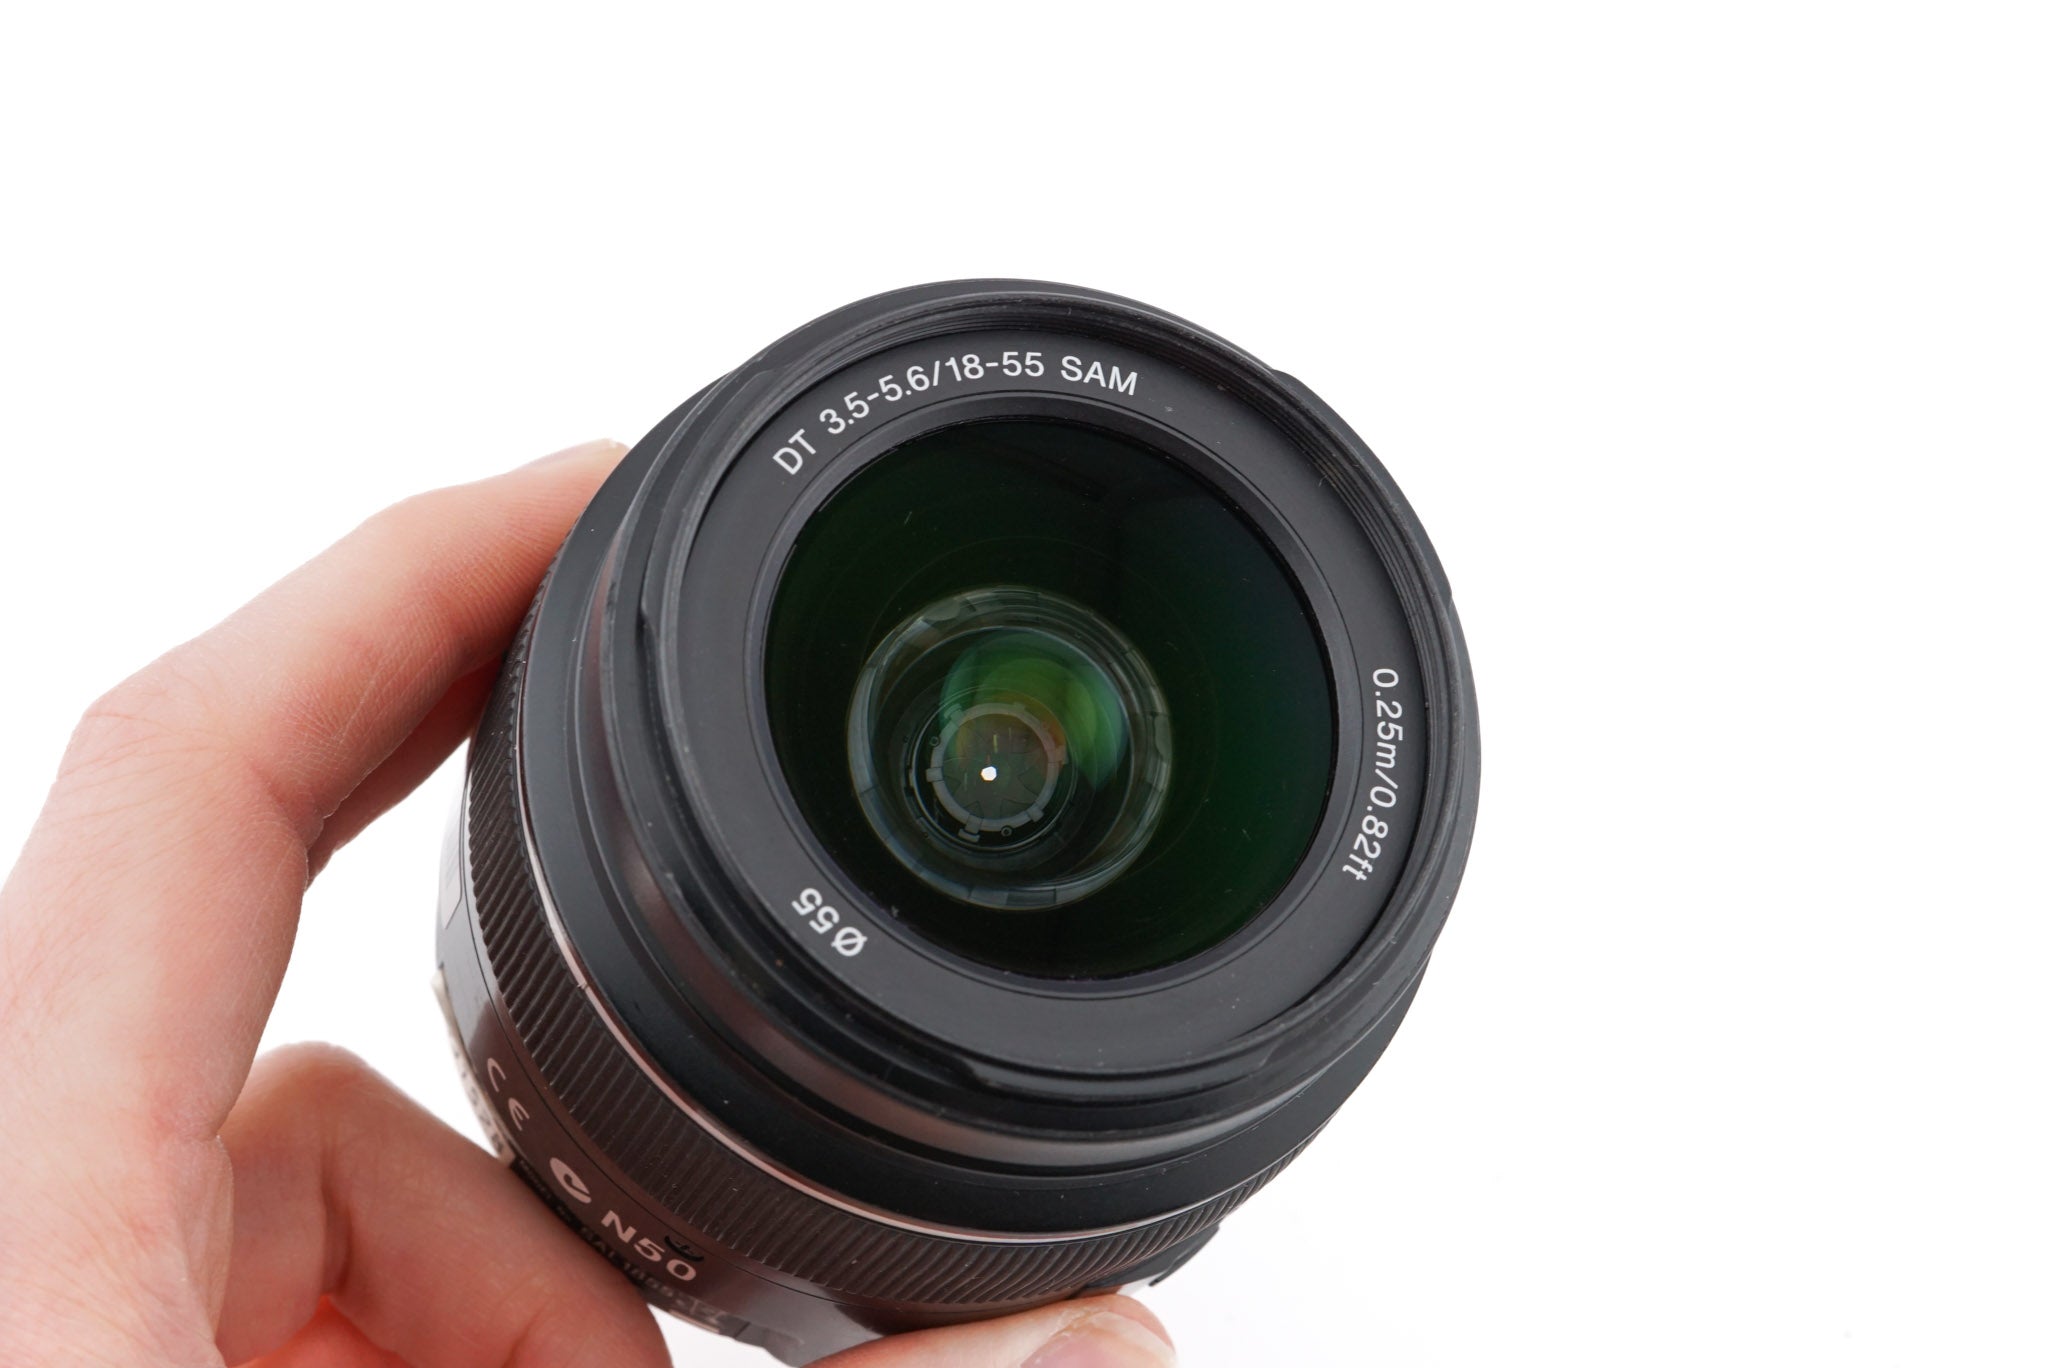 販売取寄SONY α65 DT 18-55mm F3.5-5.6 SAM レンズキット デジタルカメラ